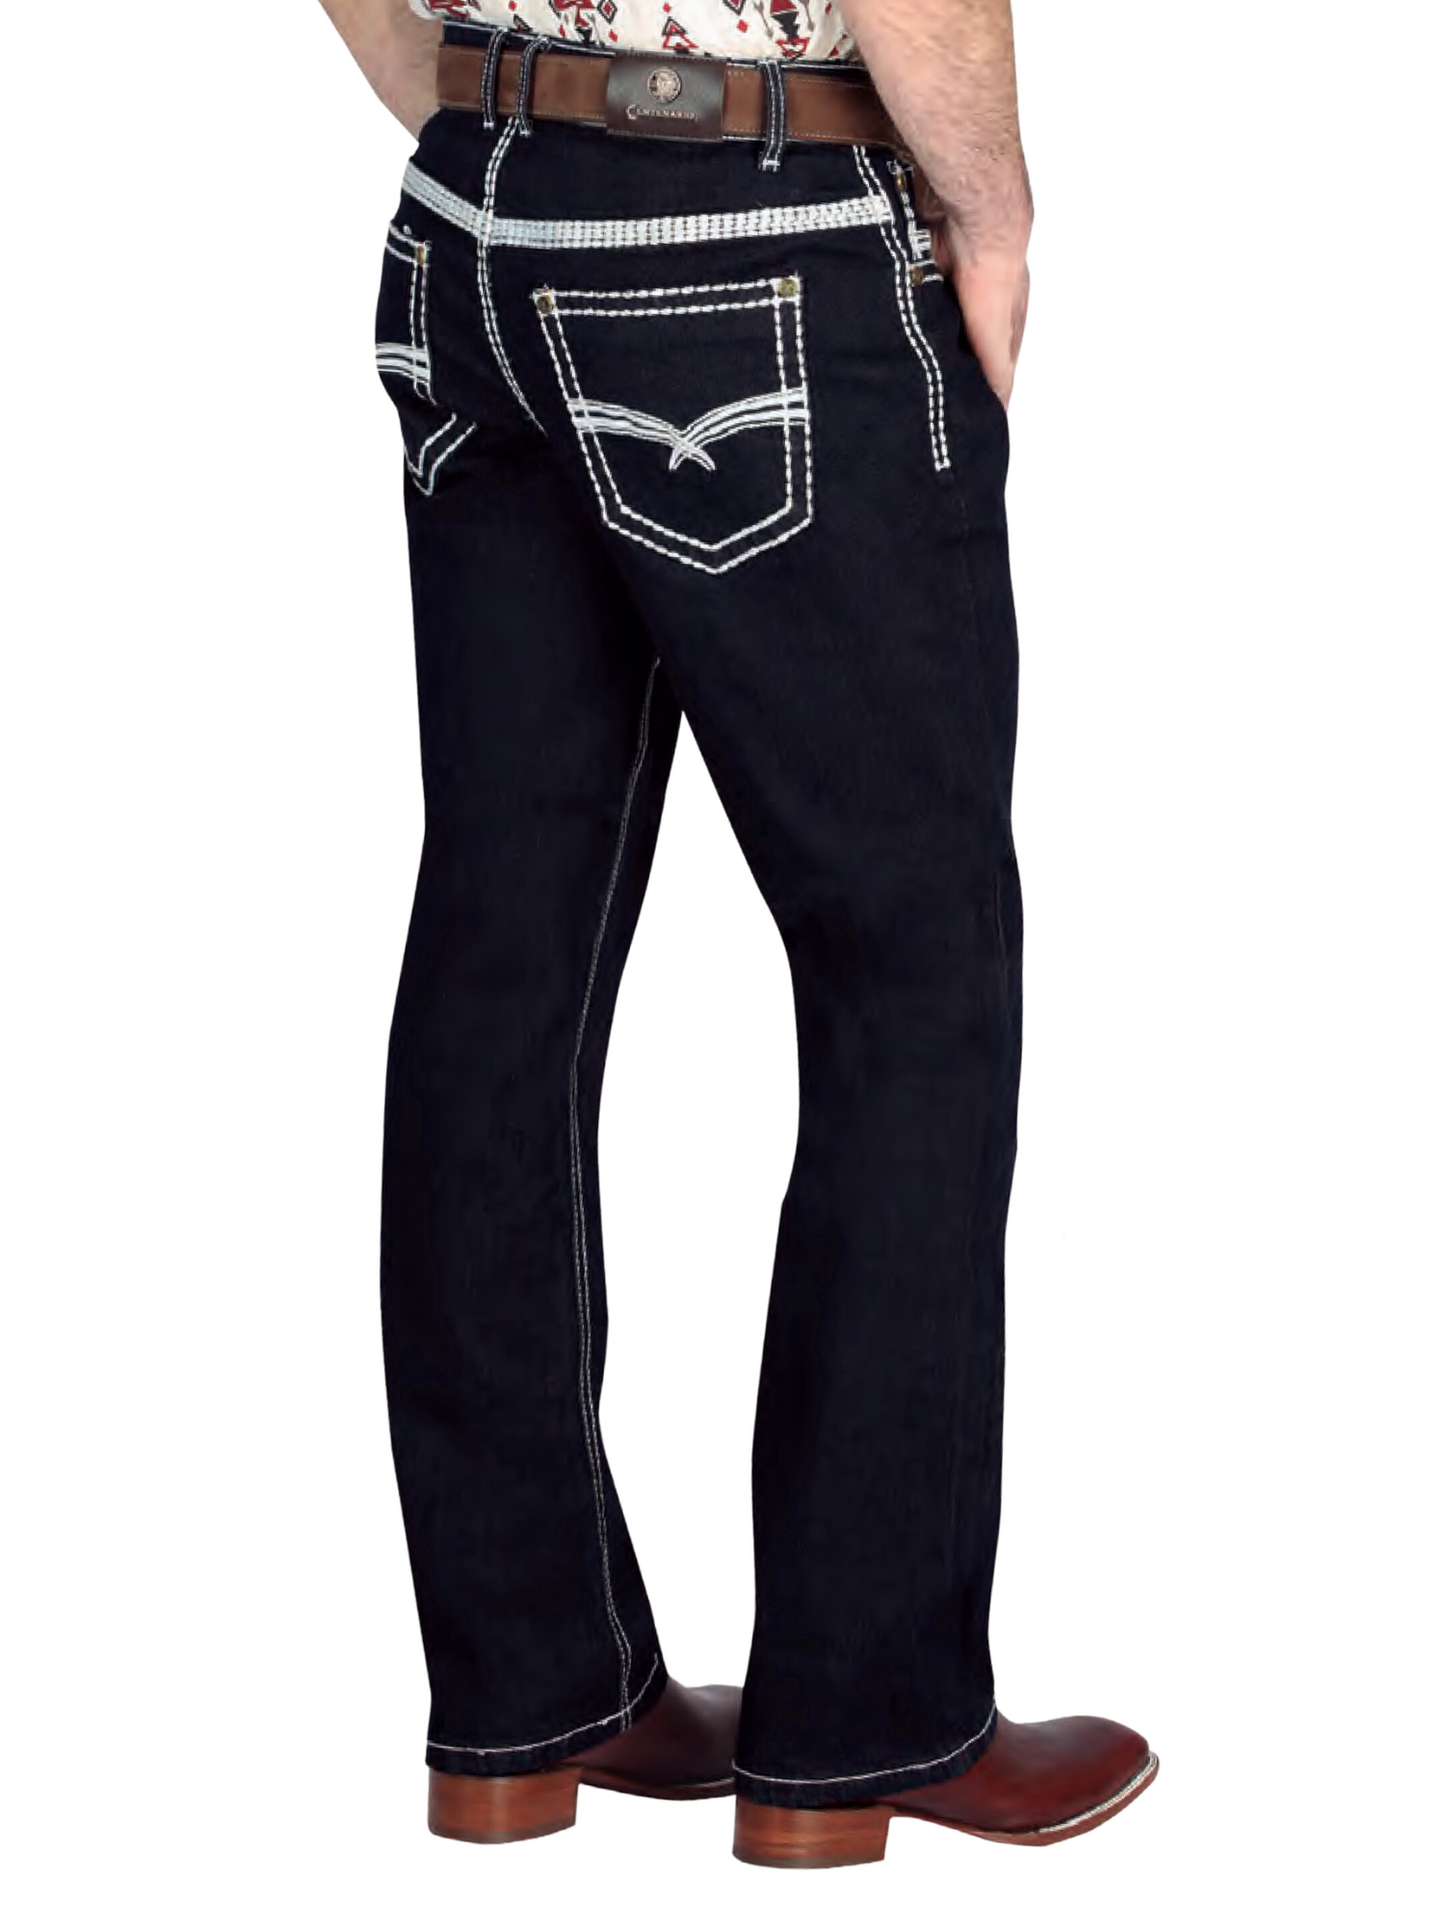 Pantalon Vaquero de Mezclilla Boot Cut Azul Oscuro para Hombre 'Centenario' - ID: 44844 Pantalones de Vaquero Centenario 